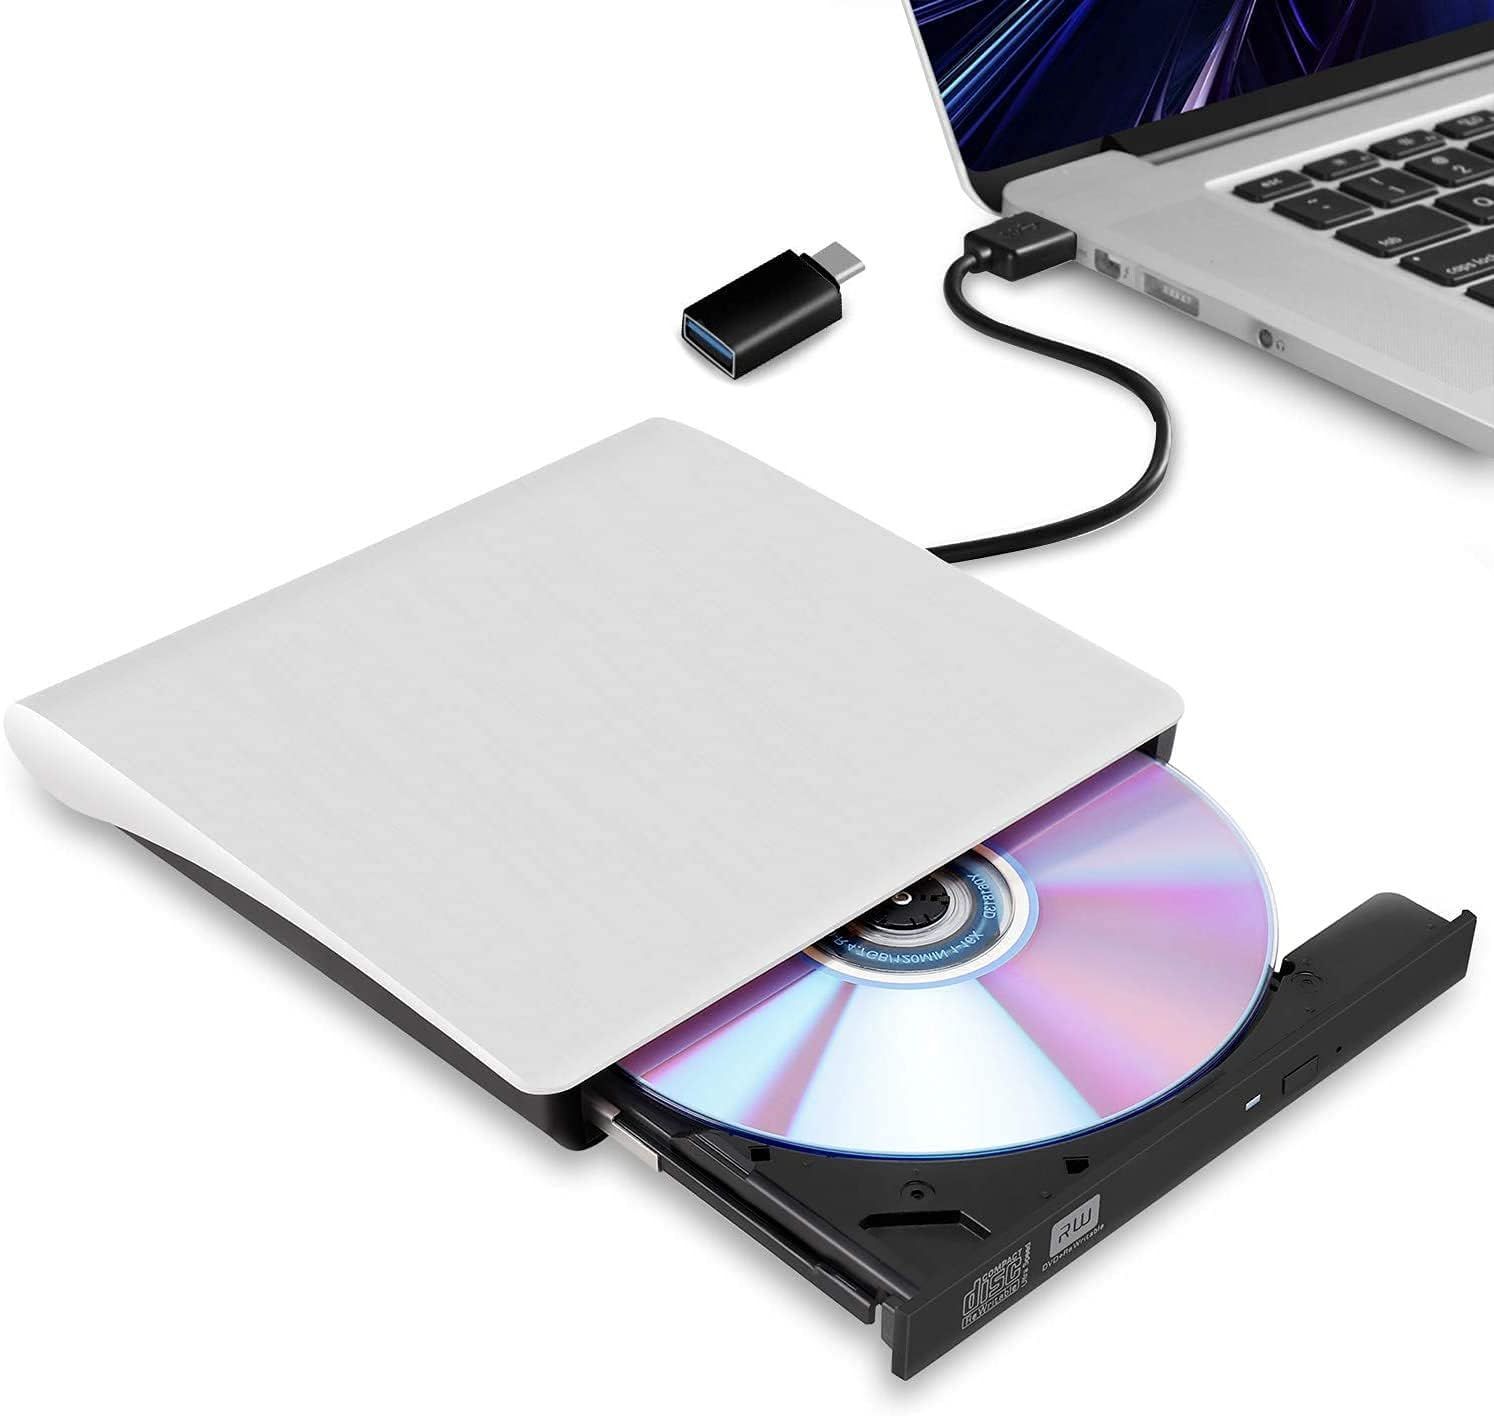 【在庫処分】CD/DVD読取・書込 DVD±RW ノートパソコン CD-RW CD/DVDドライブ USB3.0/2.0 ポータブルドライブ Window/Mac PC外付けドライブ 外付け光学ドライブ OS両対応 CD/DVDプレーヤー 高速 外付CD・DV